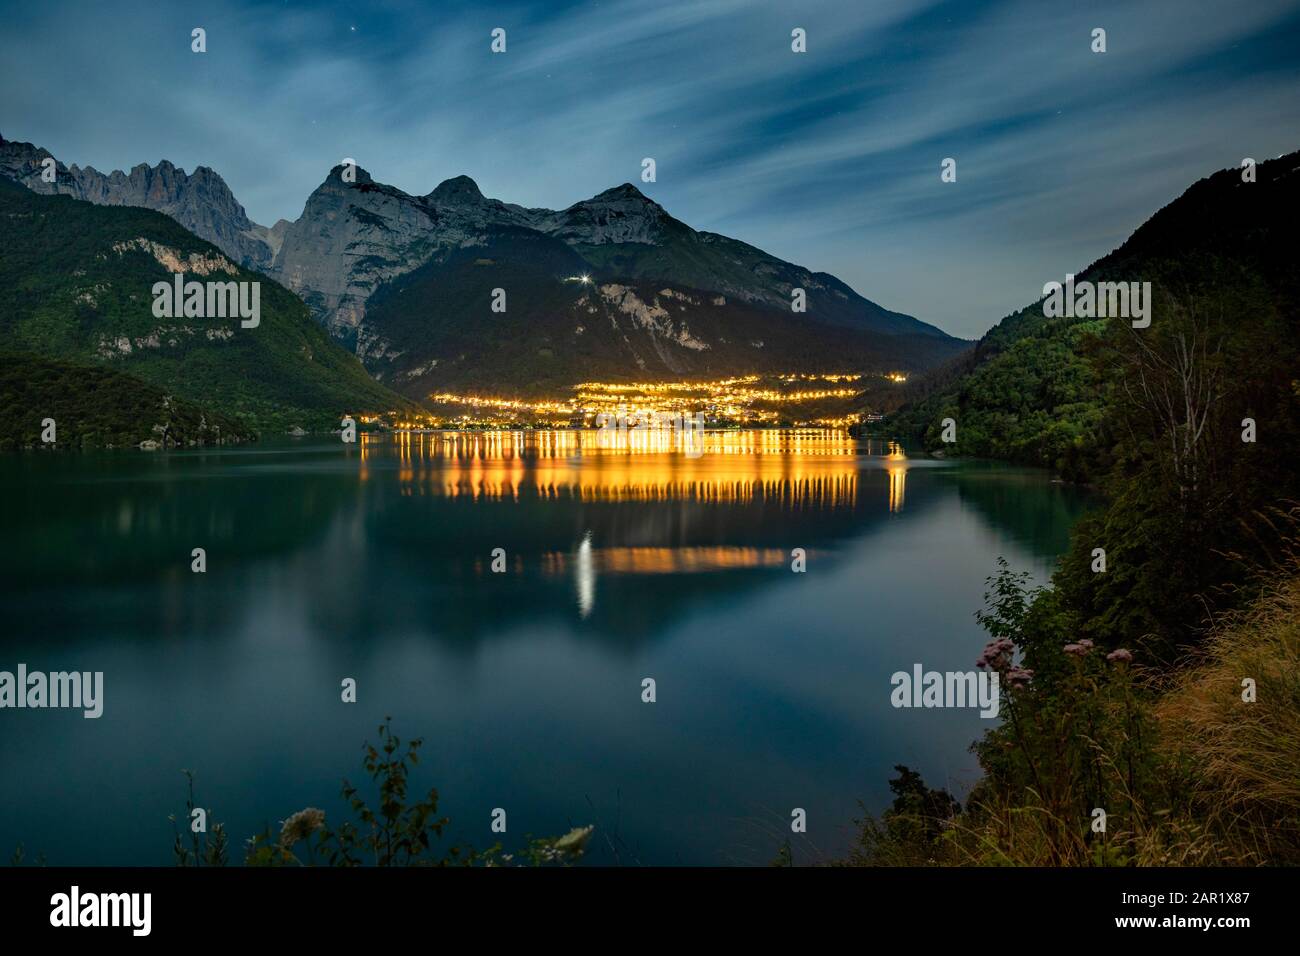 Il bellissimo Molveno di notte con la luce riflessa sul grande lago. Sullo sfondo ci sono grandi montagne Foto Stock